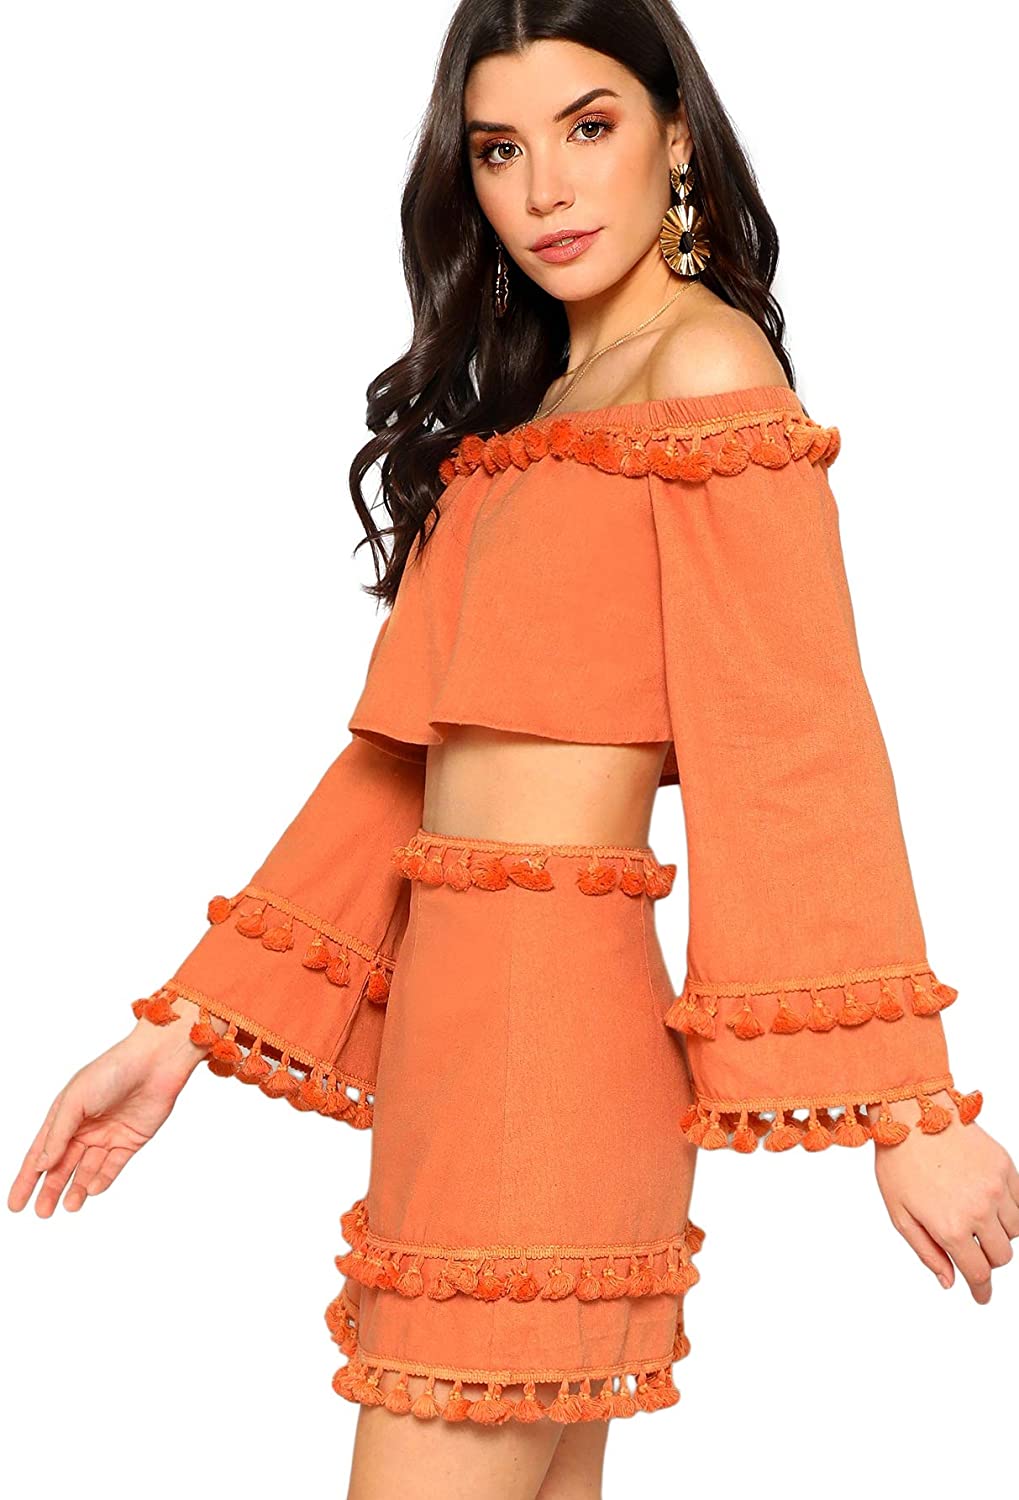 Shein Women S 2 Piece Outfit Fringe Trim Crop Top Skirt Set Ebay